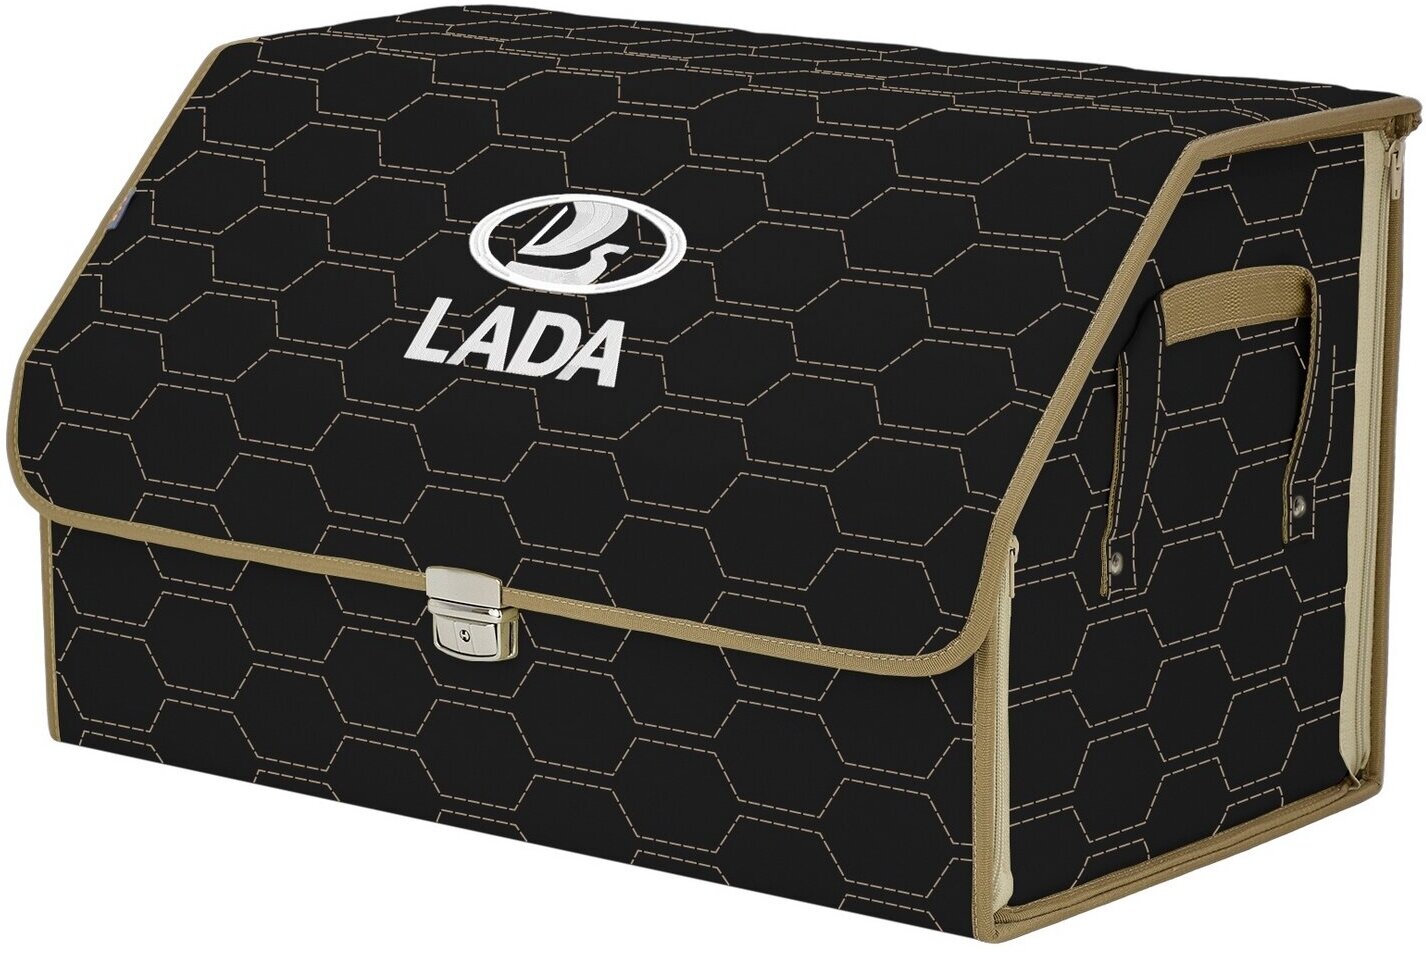 Органайзер-саквояж в багажник "Союз Премиум" (размер XL). Цвет: черный с бежевой прострочкой Соты и вышивкой LADA (лада).